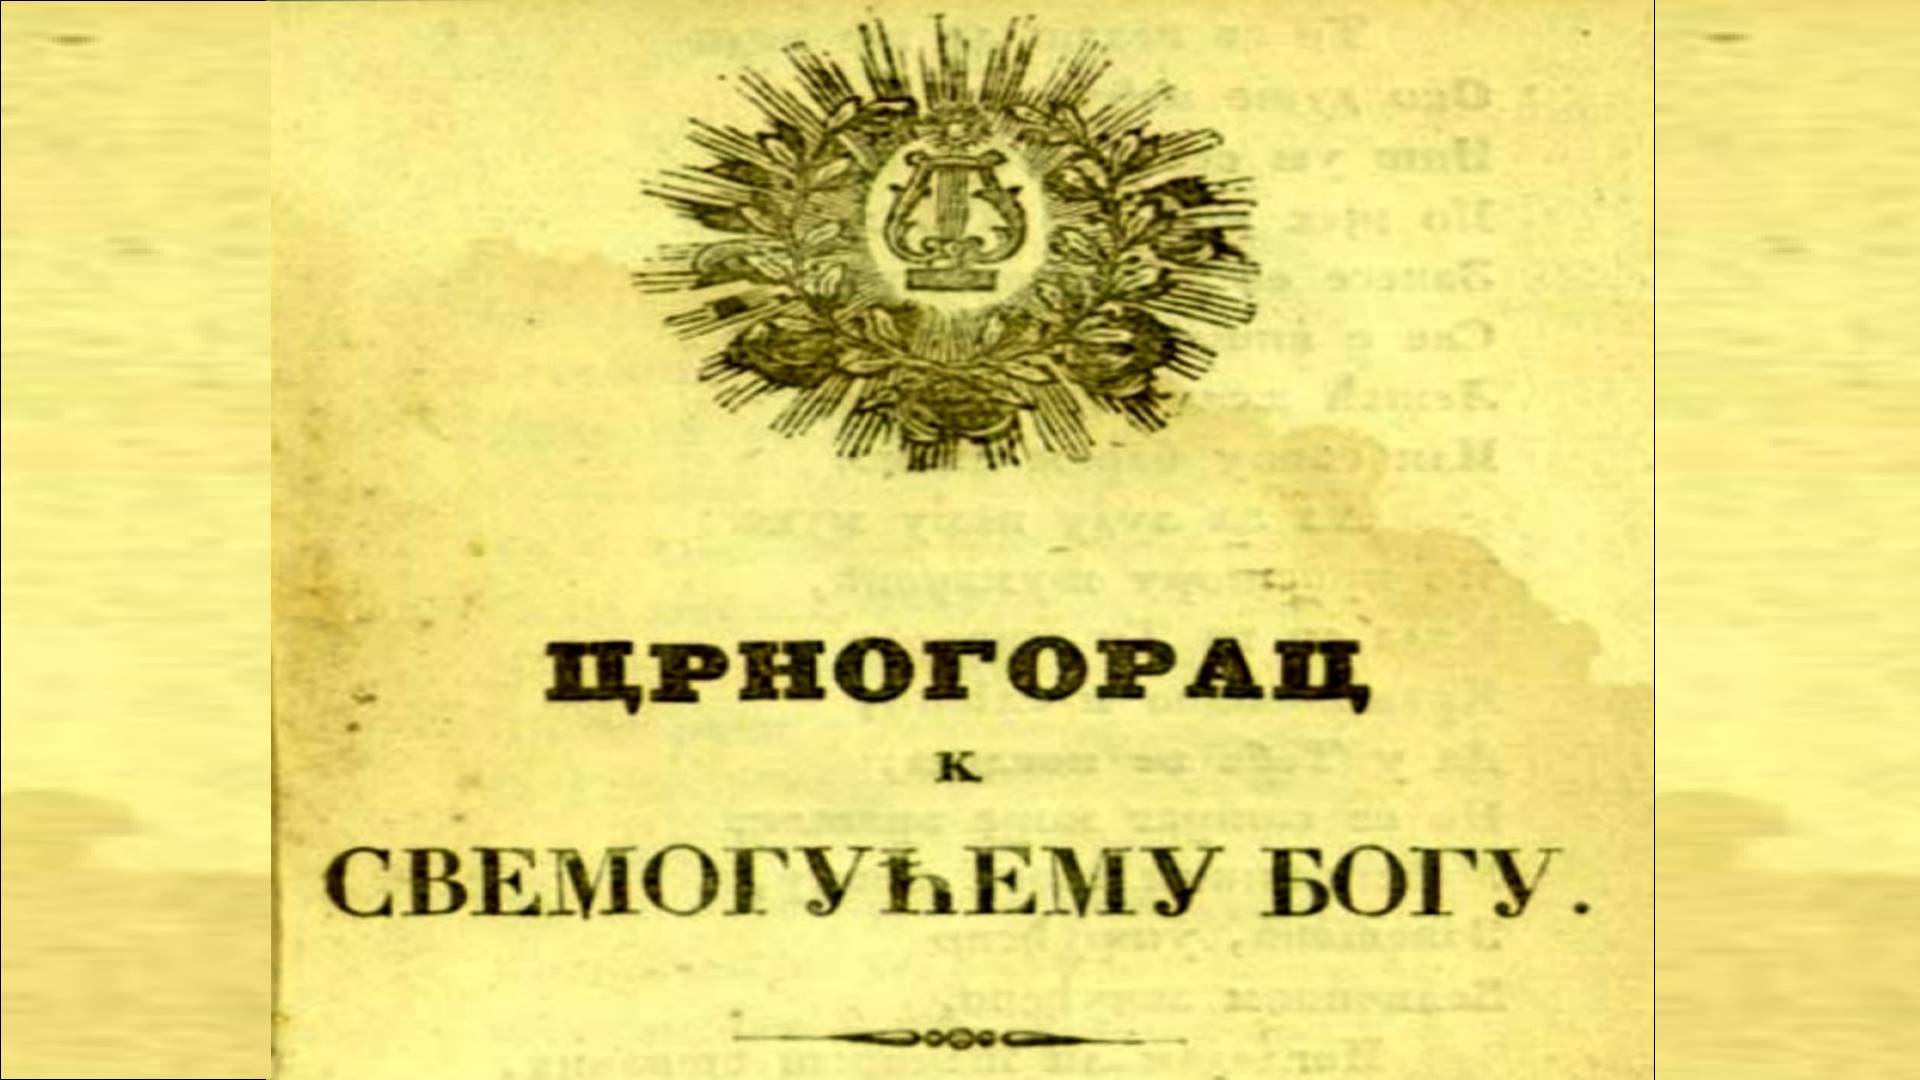 CRNOGORSKI JEZIK – Njegoševa knjiga u Drezdenu 1839. godine